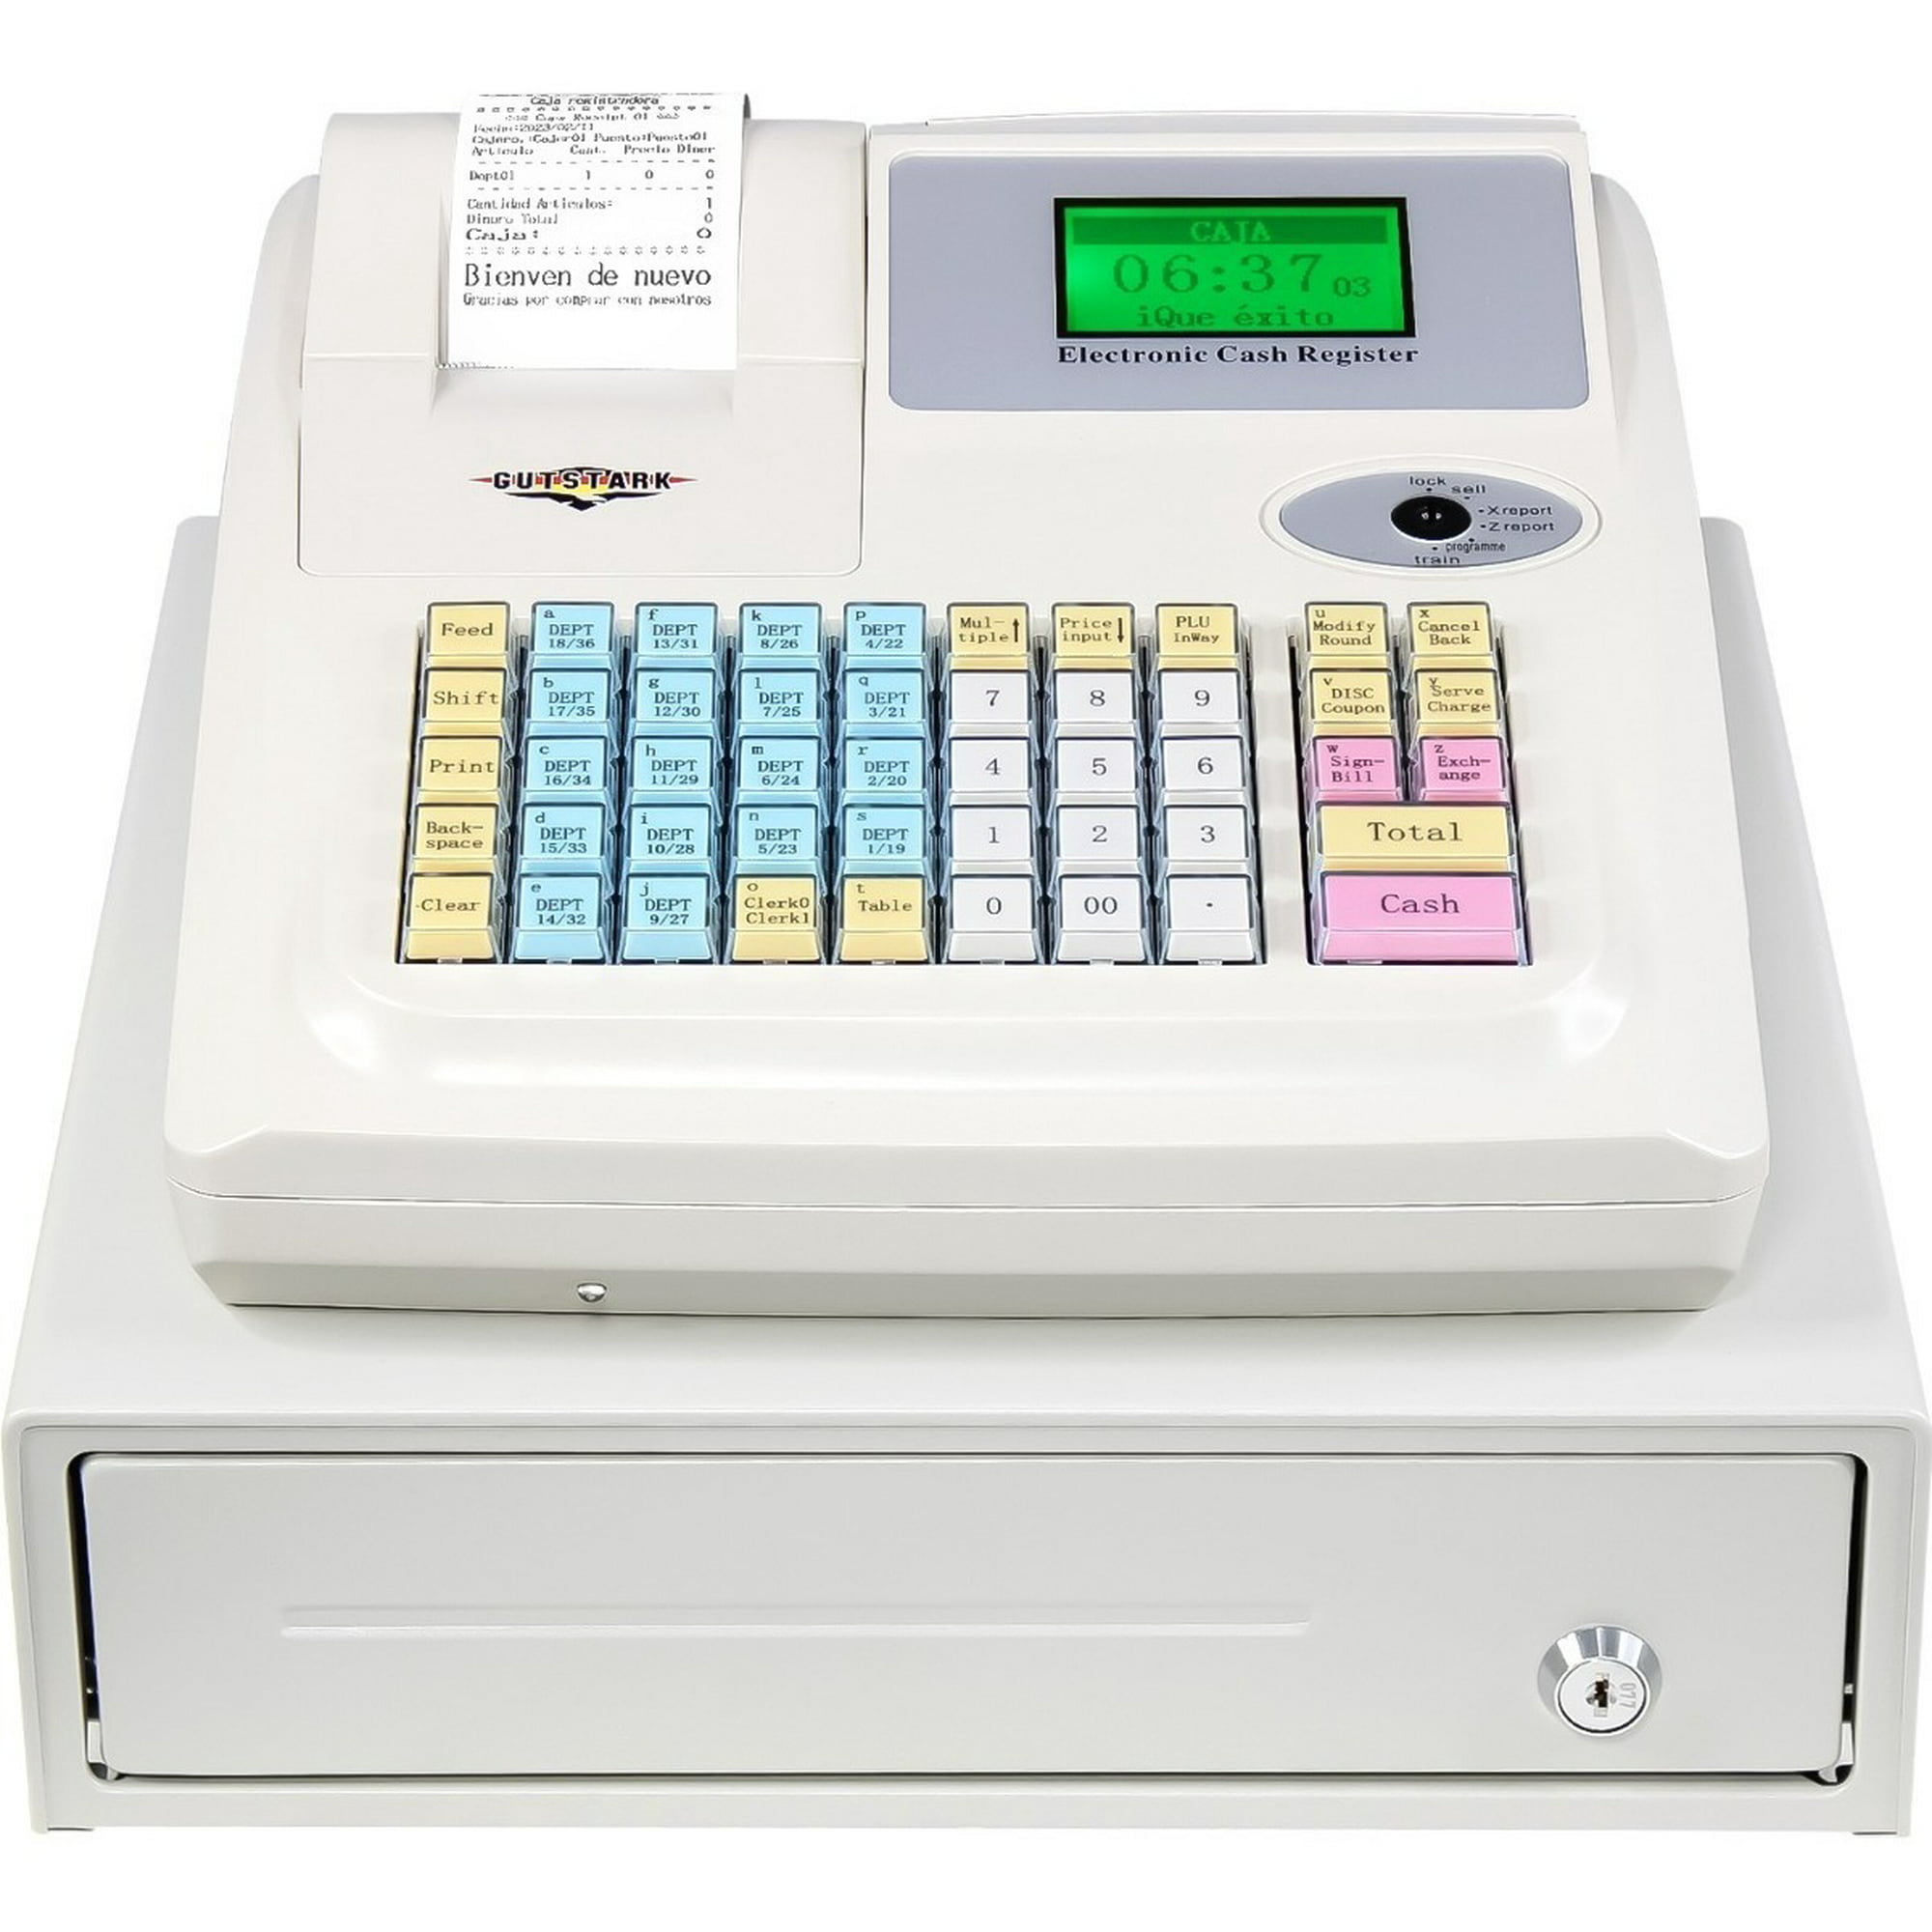 Caja Registradora Electronica Comercial Impresora Termica